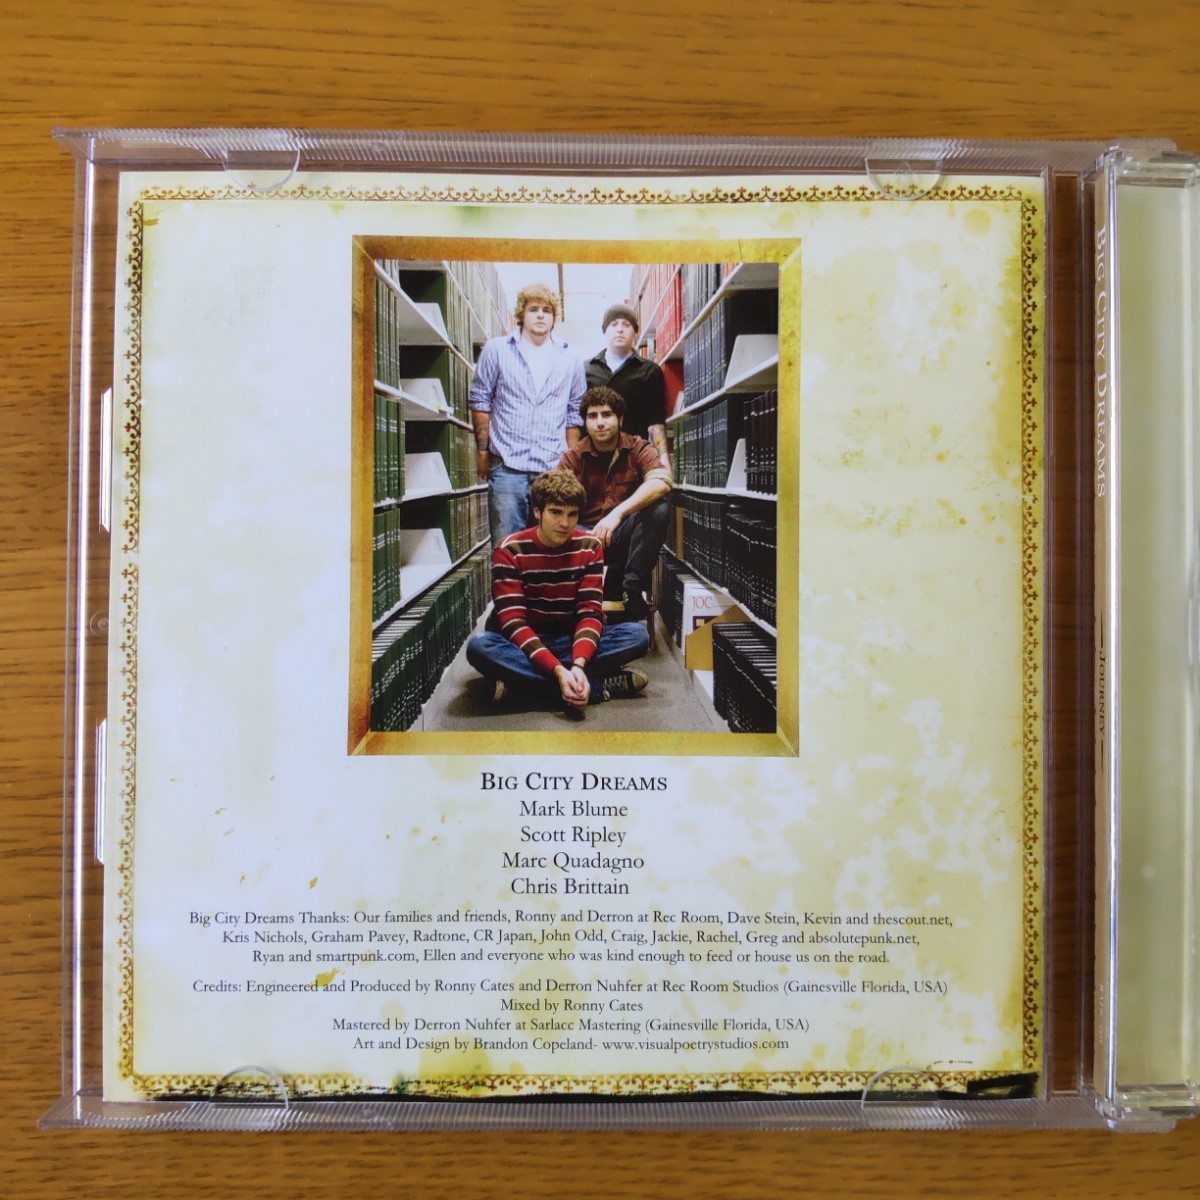 【中古・再値下】ビッグ・シティ・ドリームス/ジャーニー  国内盤CD Journey